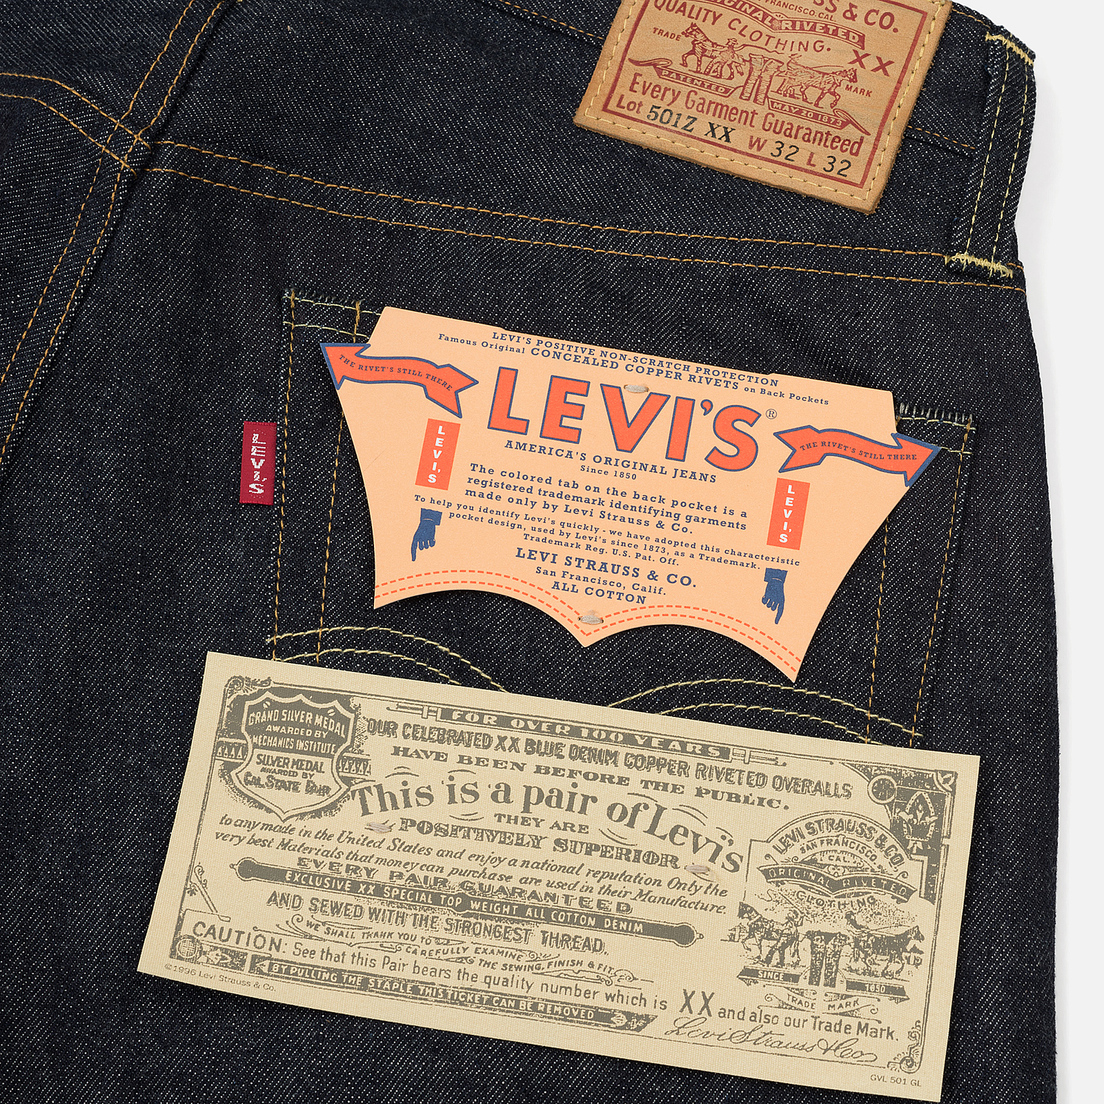 Levi's Vintage Clothing Мужские джинсы 1 954 501